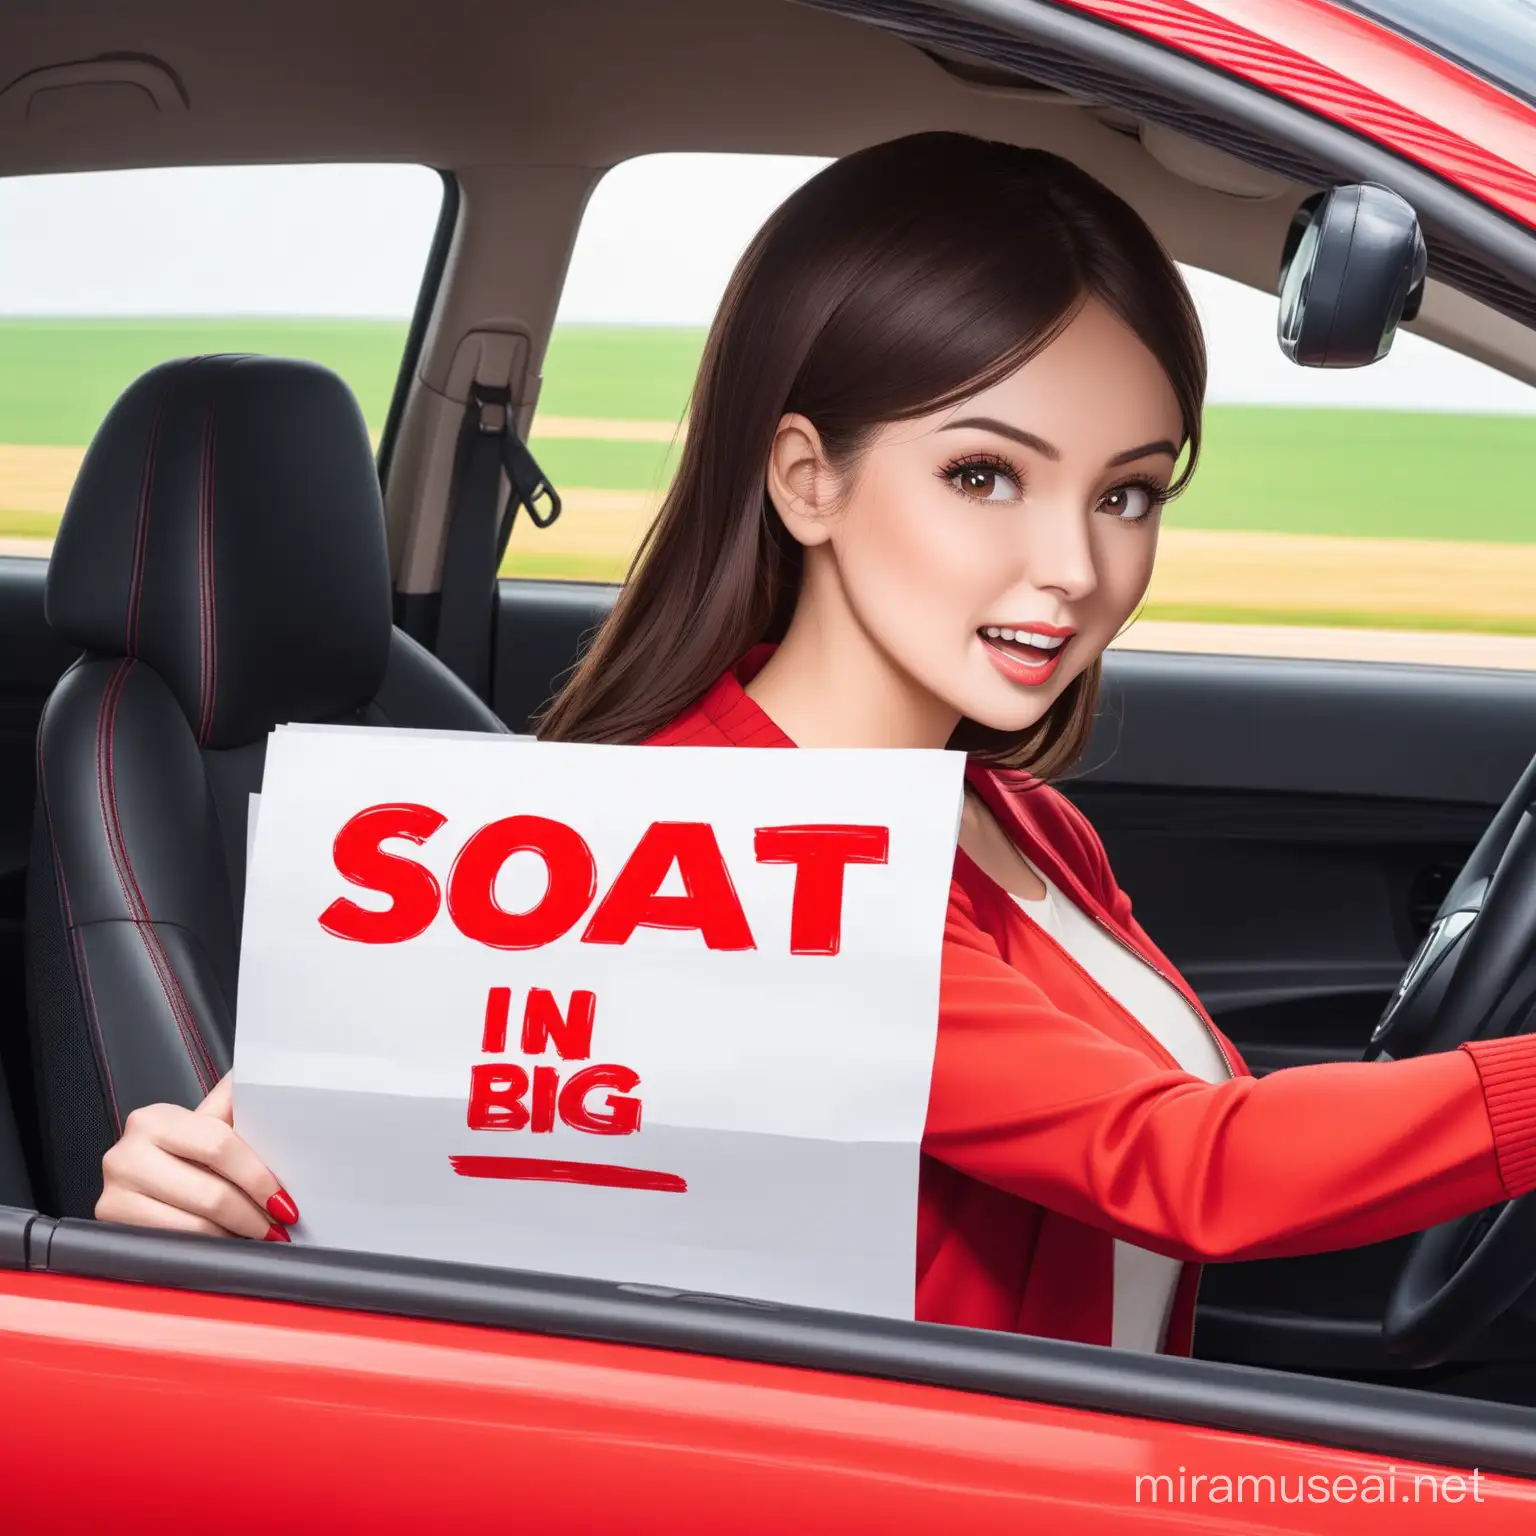 Señora conduciendo con un papel en la mano q diga Soat con letras grandes y rojas 


